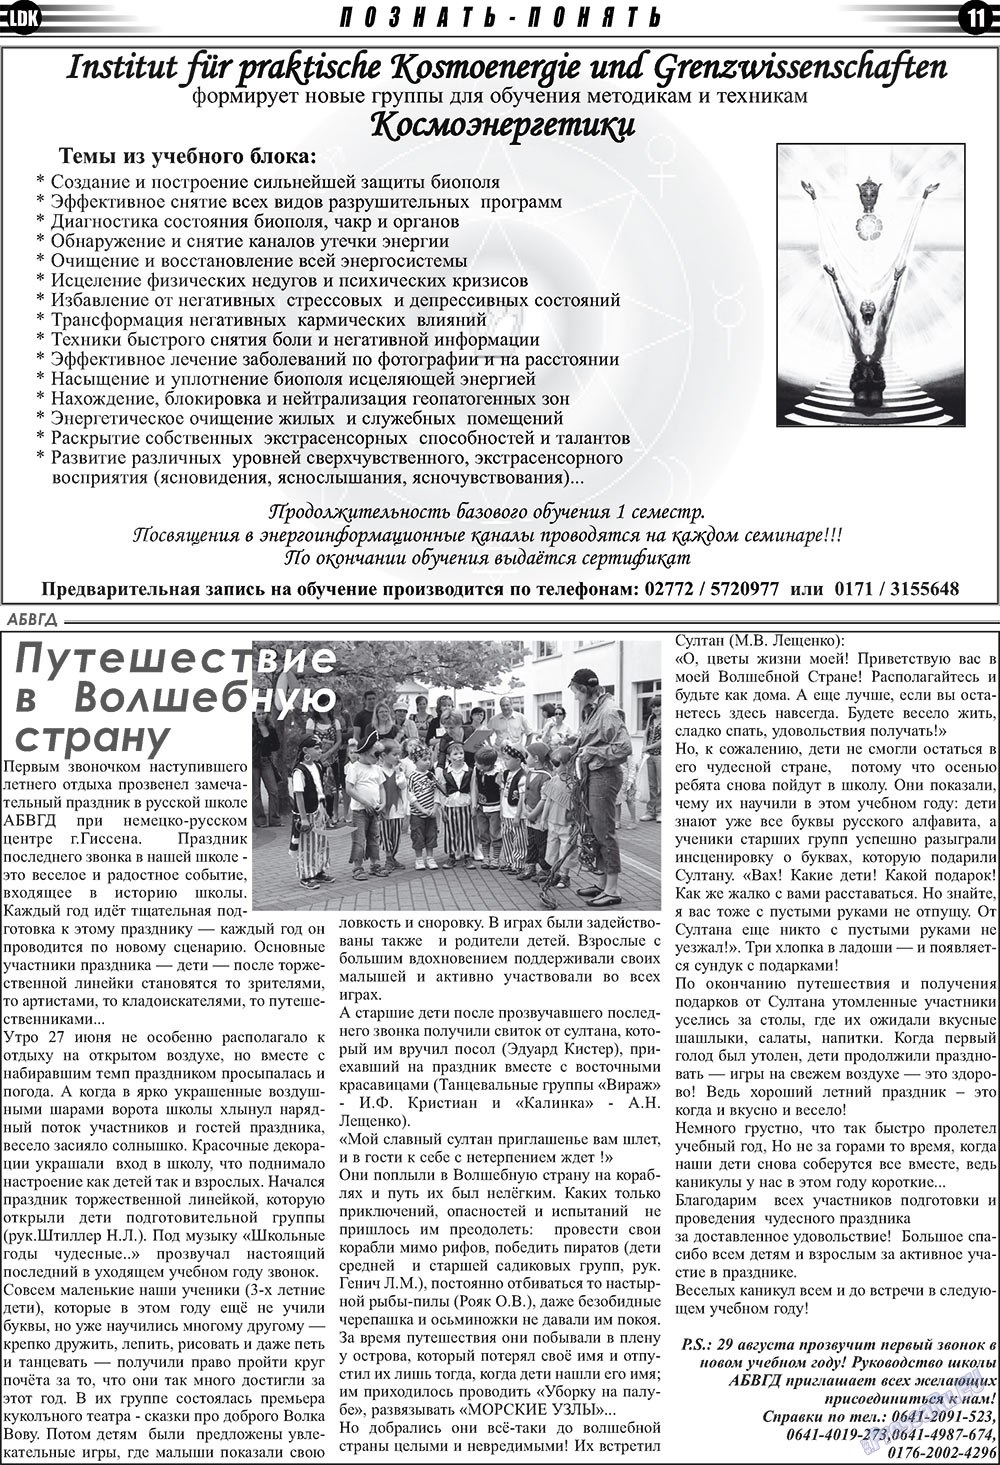 LDK по-русски (газета). 2009 год, номер 8, стр. 11